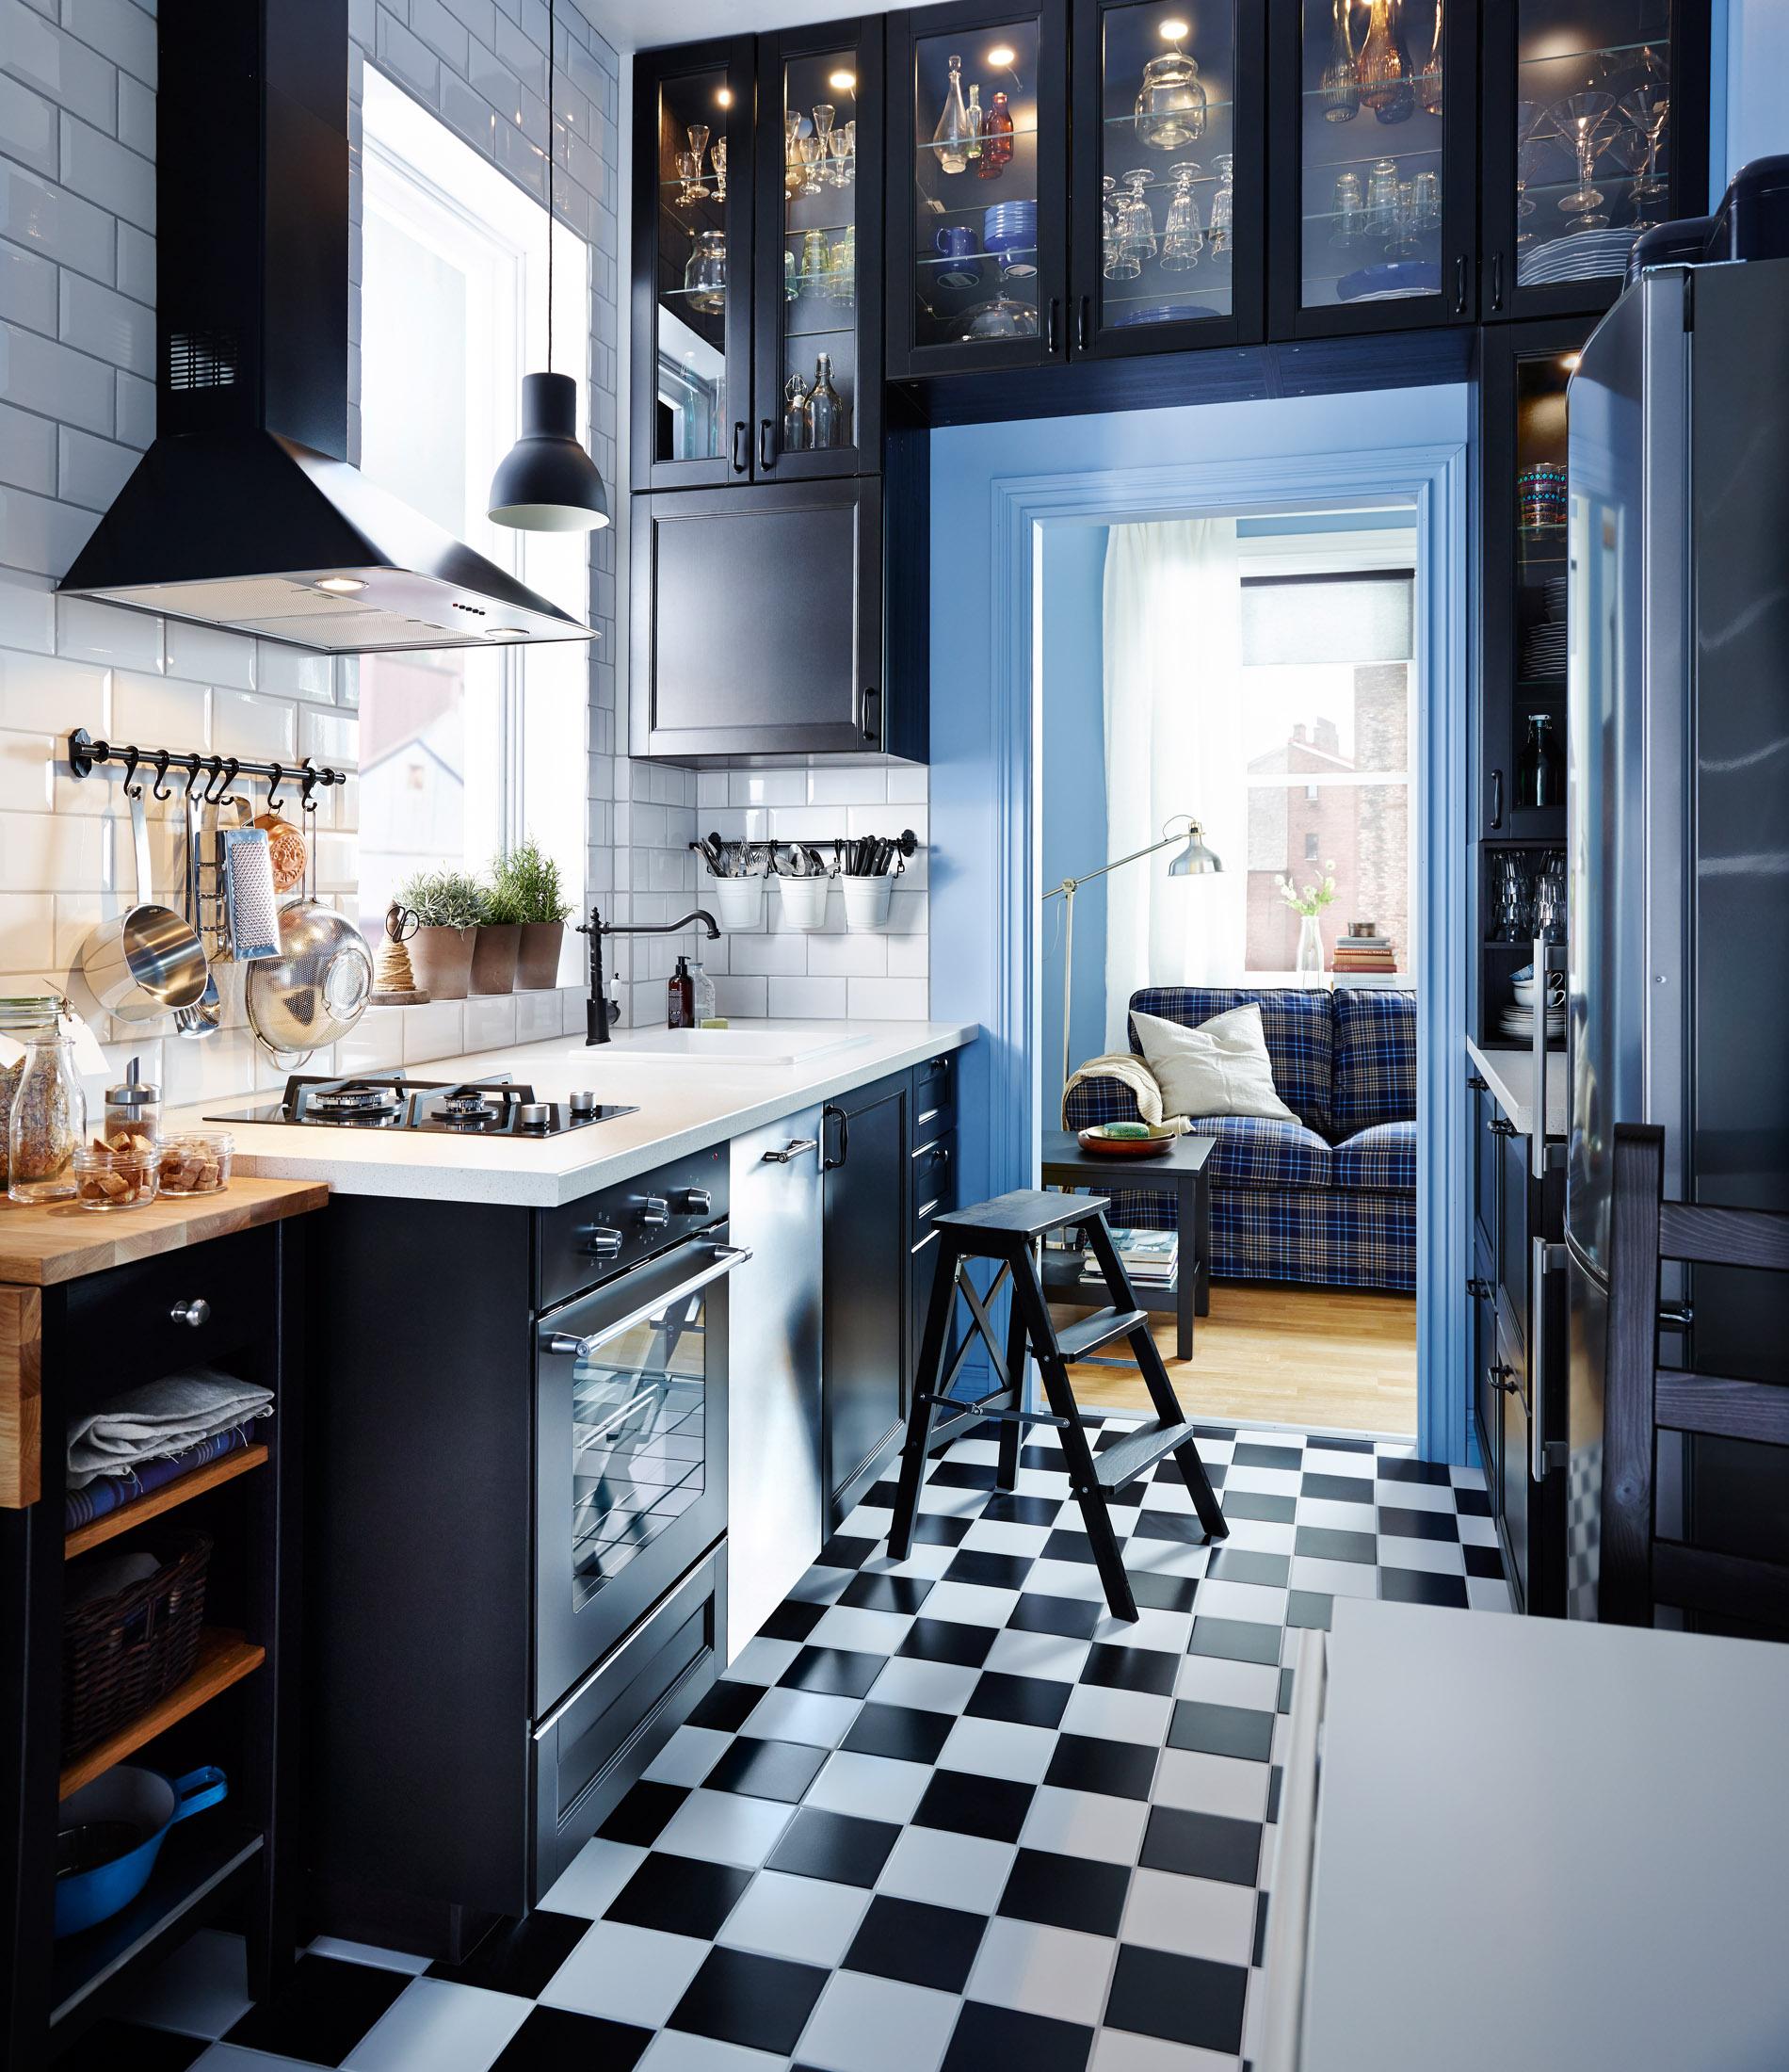 Schwarz-weiß gefliester Küchenboden #fliesen #sofa #kariertessofa #schwarzweißefliesen ©Inter IKEA Systems B.V. 2014